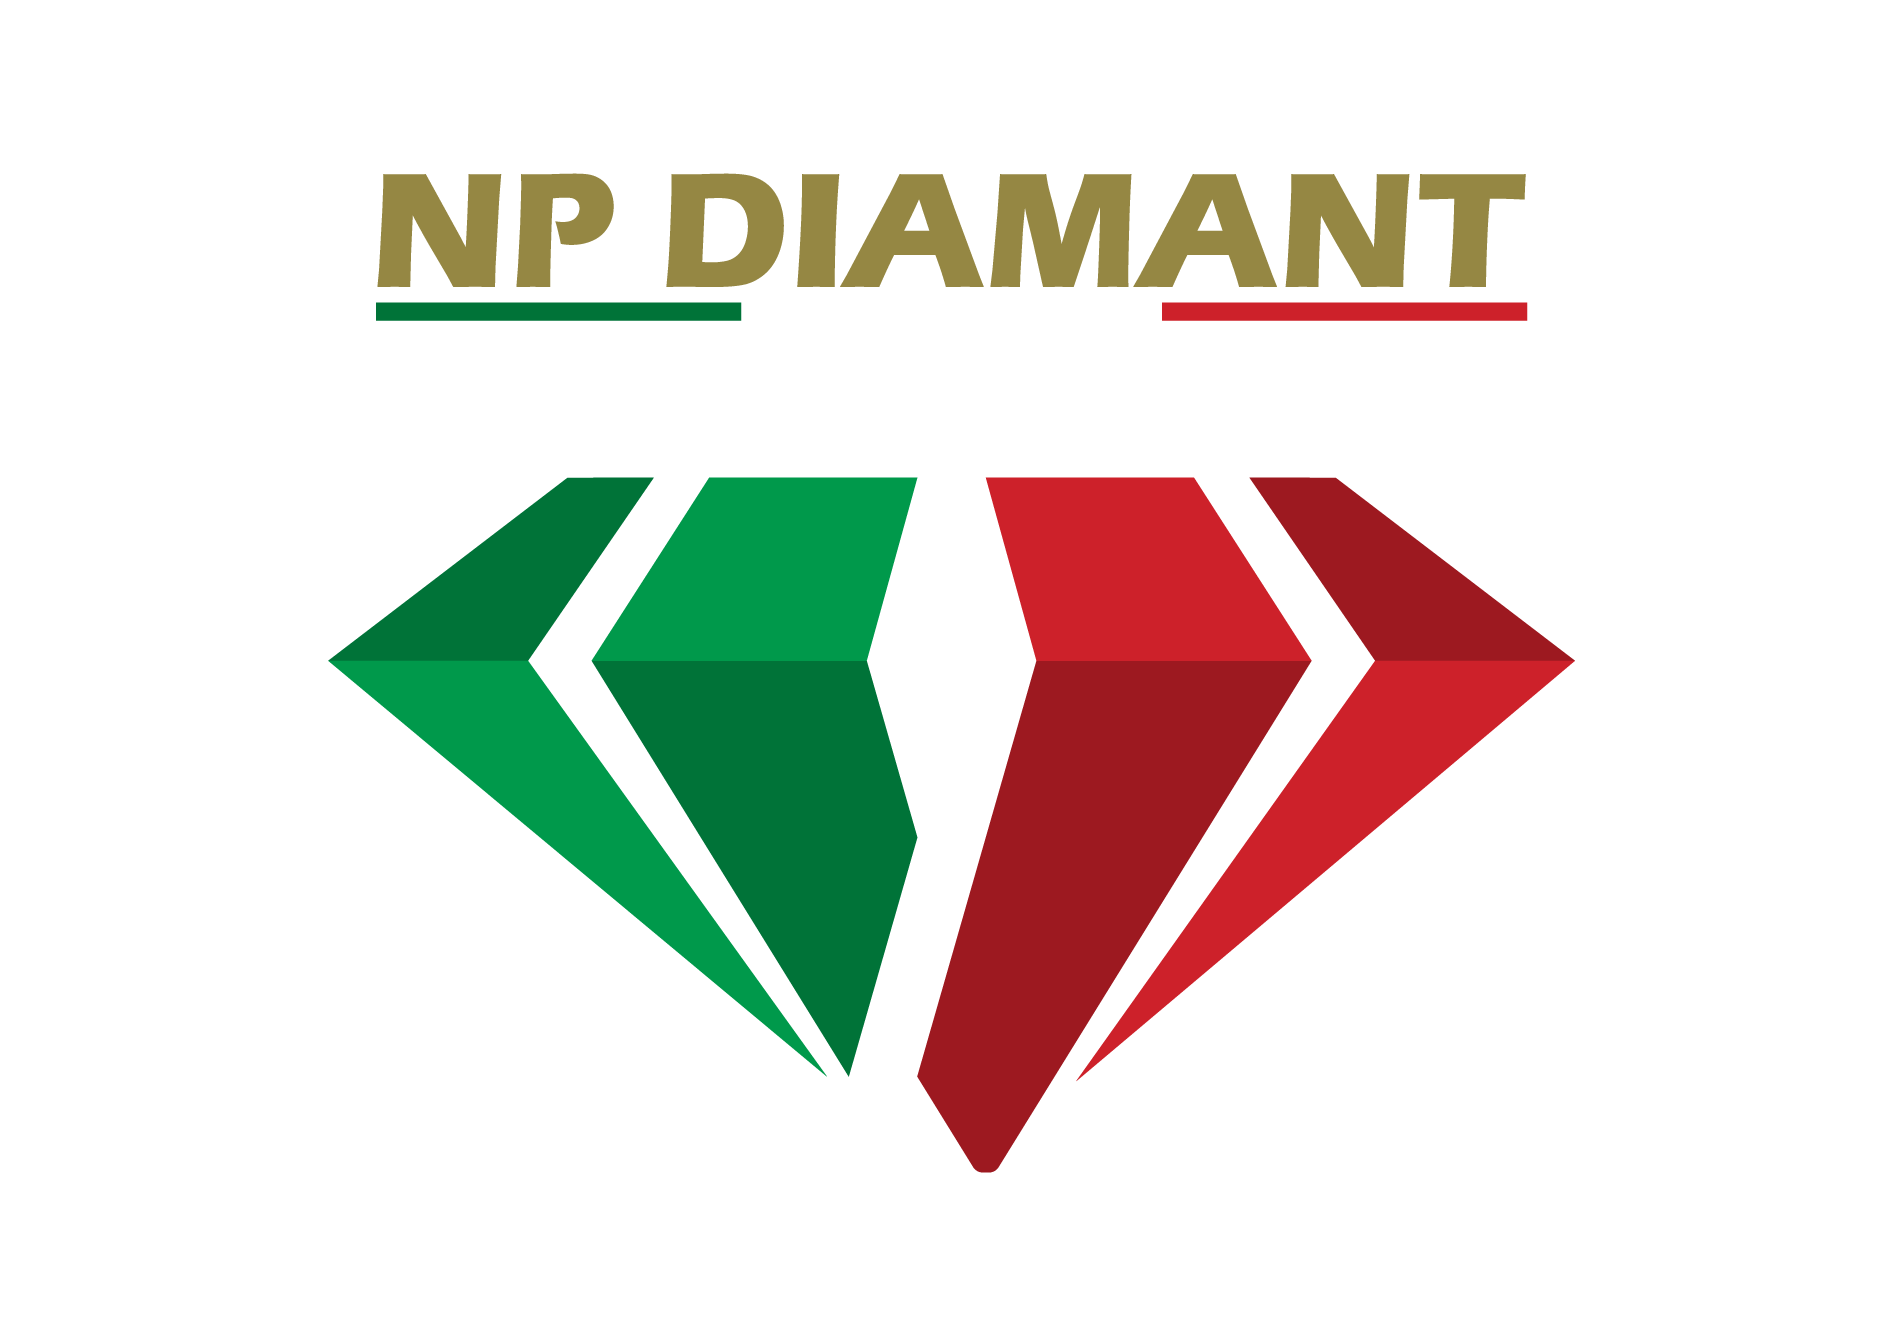 npdiamant_homeit_1900_1343_trasp